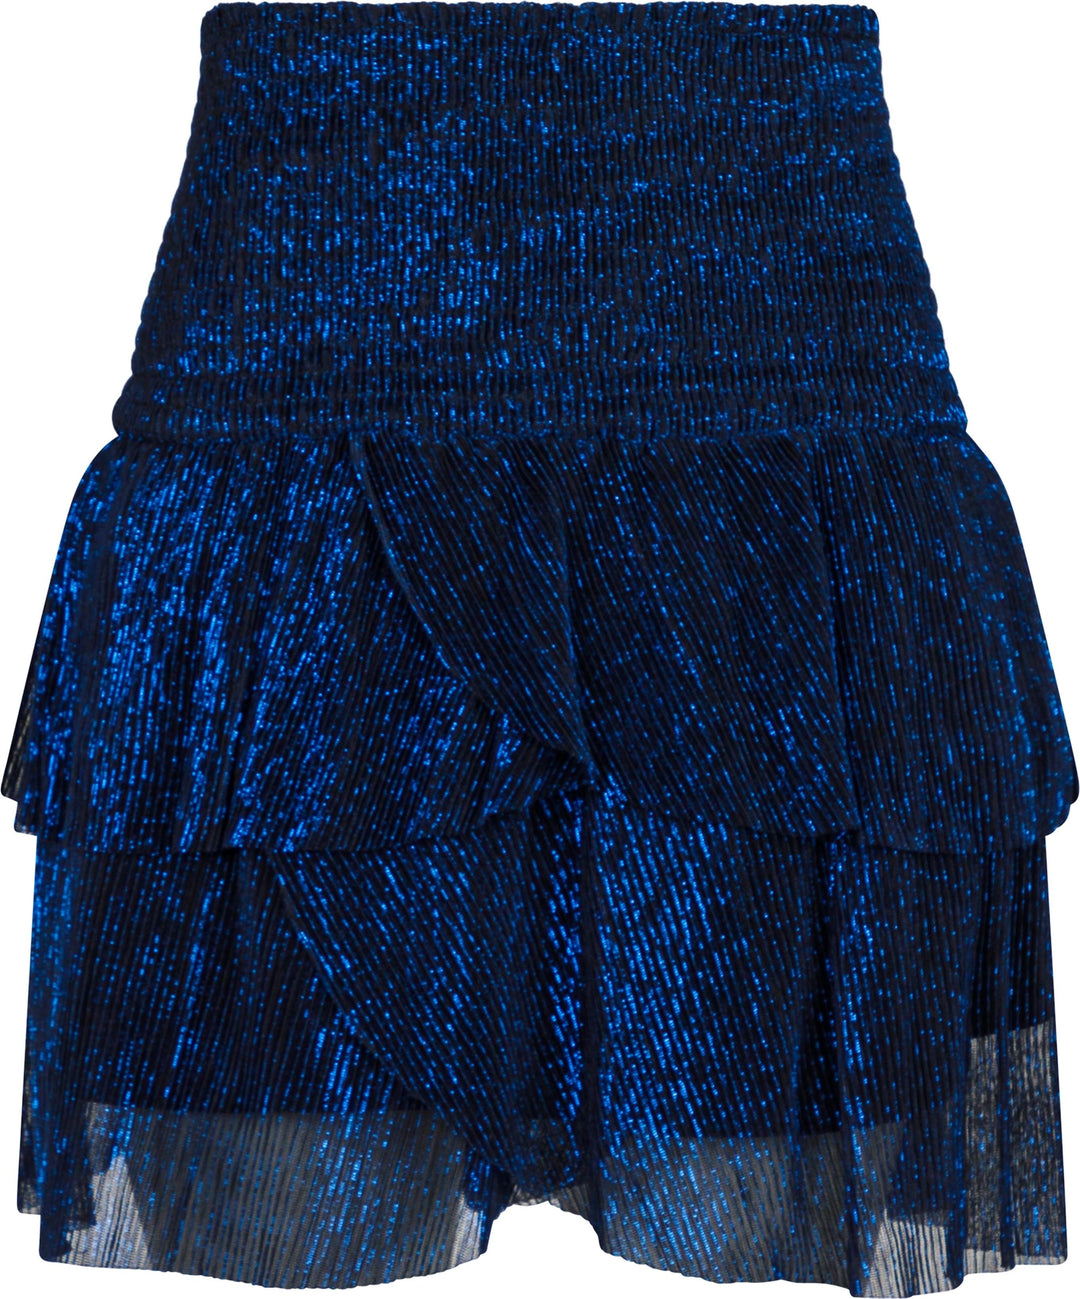 Neo Noir - Carin Glitz Skirt - Blue